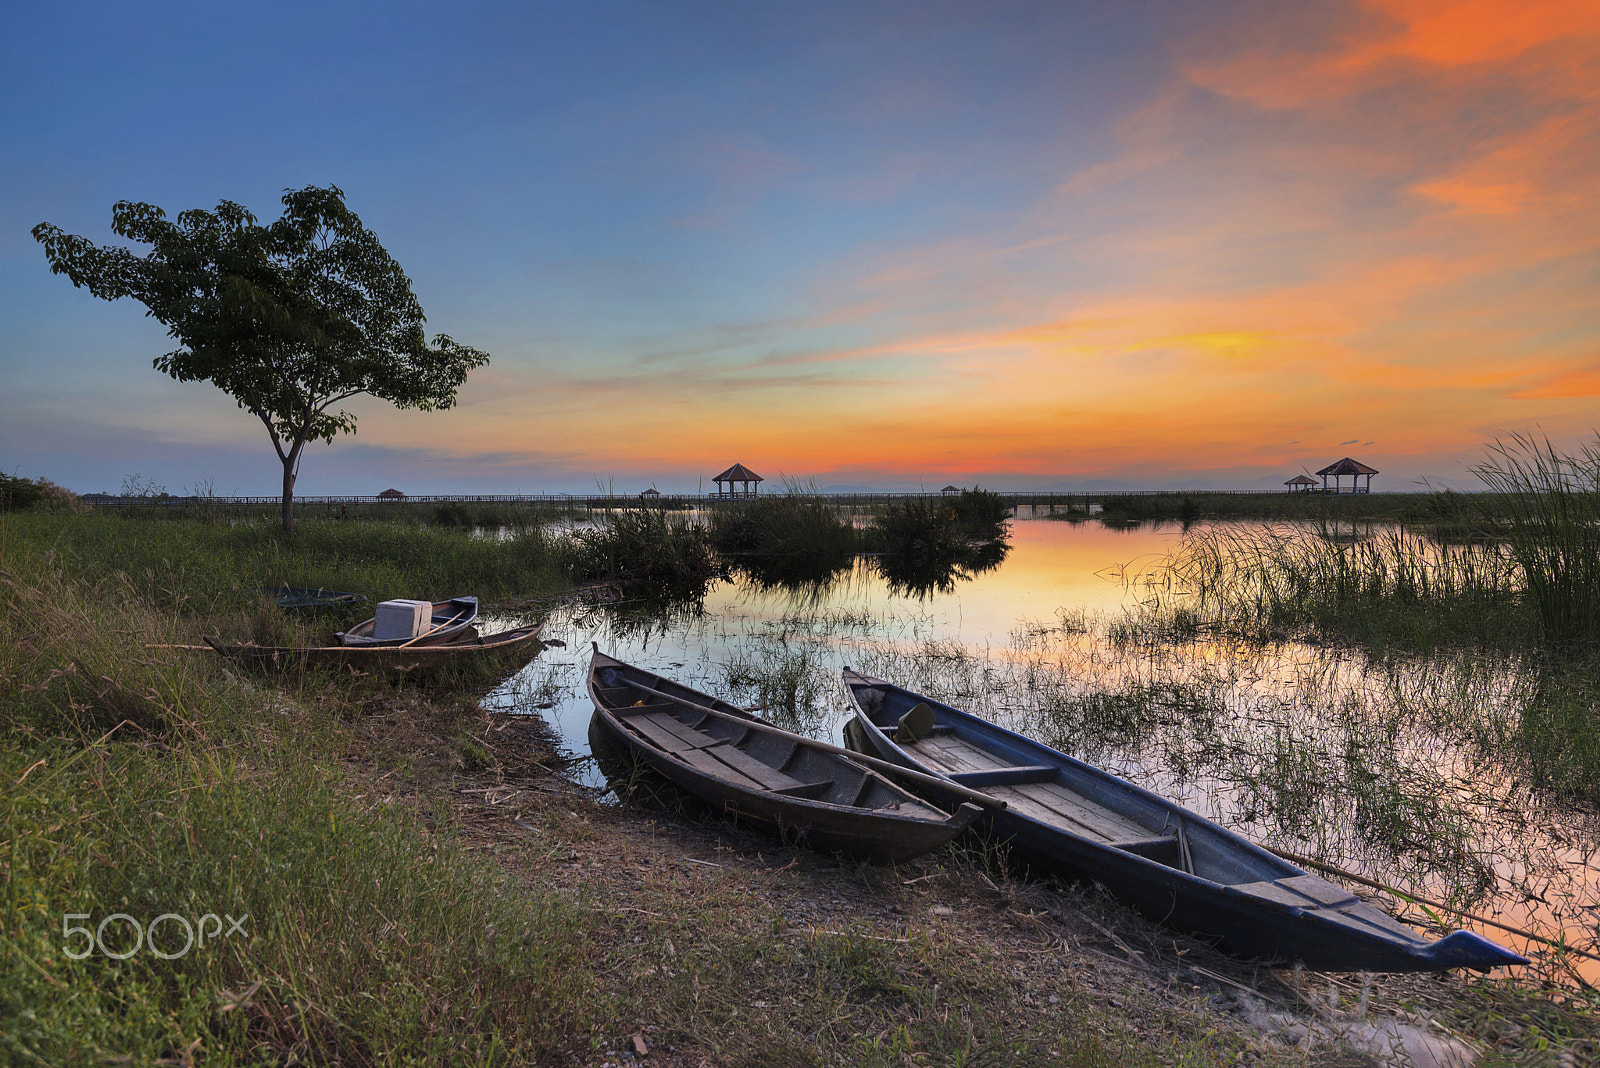 Nikon D800 sample photo. Thai fishing boat g fish at sunset photography